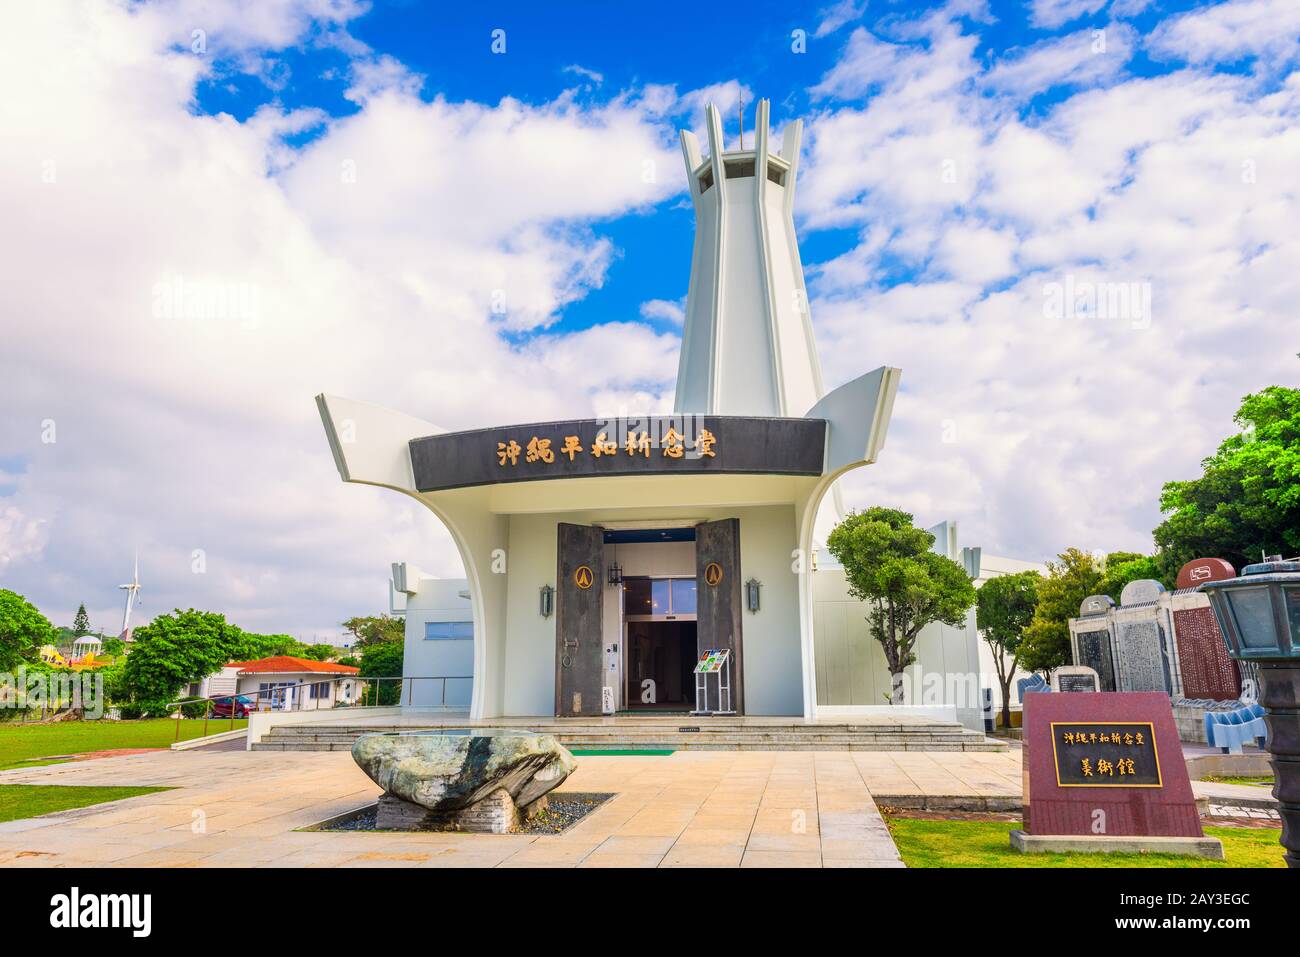 Okinawa, JAPON - 24 MARS 2017 : le Hall commémoratif de la paix d'Okinawa. La salle fait partie du Parc commémoratif de la paix qui est dédié à la bataille d'Okinawa Banque D'Images